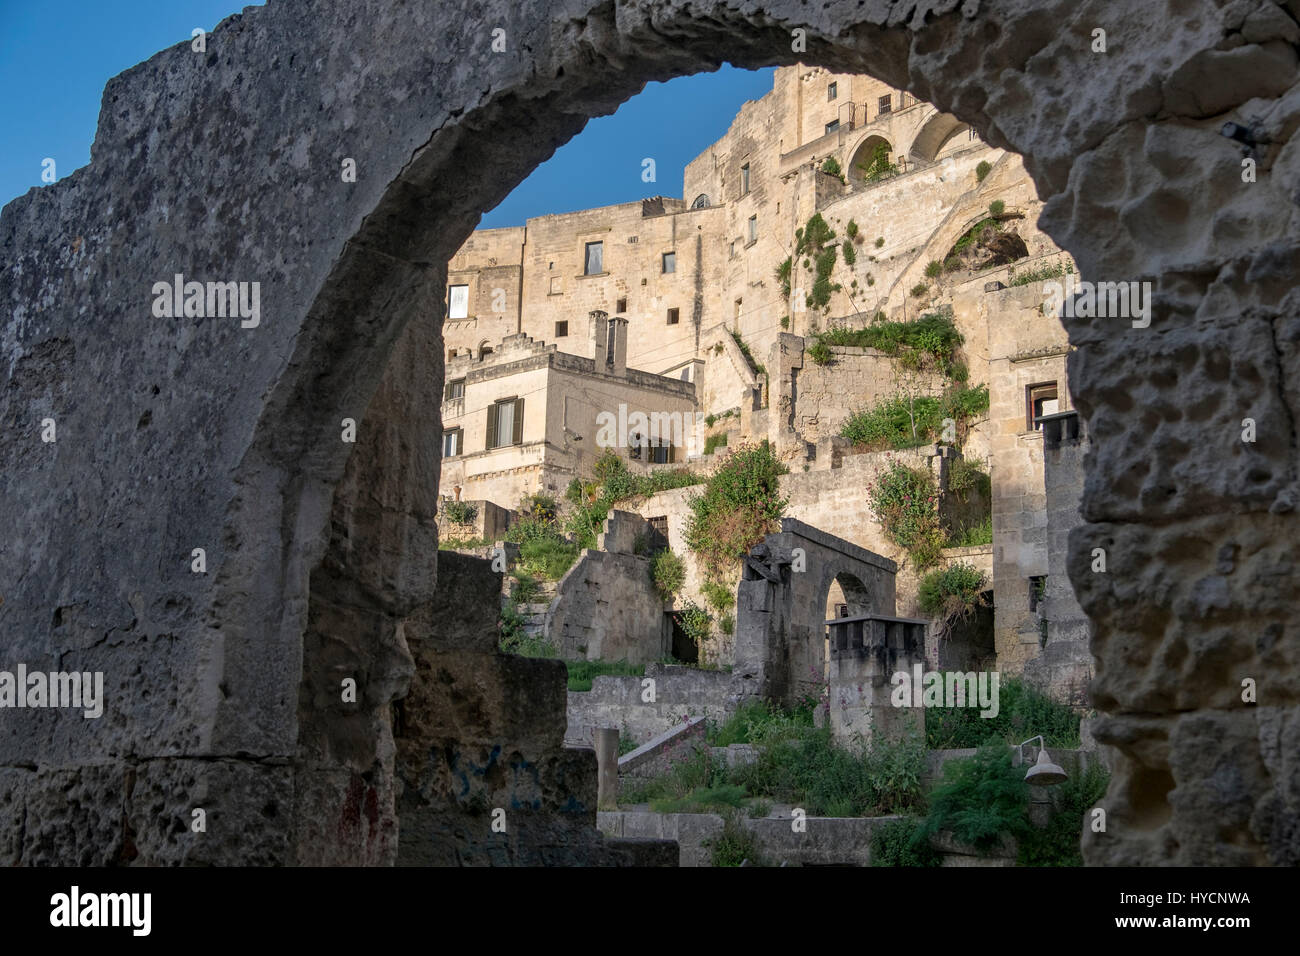 Vista di Matera, Italia, Sito del Patrimonio Mondiale e capitale europea della cultura per il 2019, come visto attraverso un arco in pietra. Foto Stock